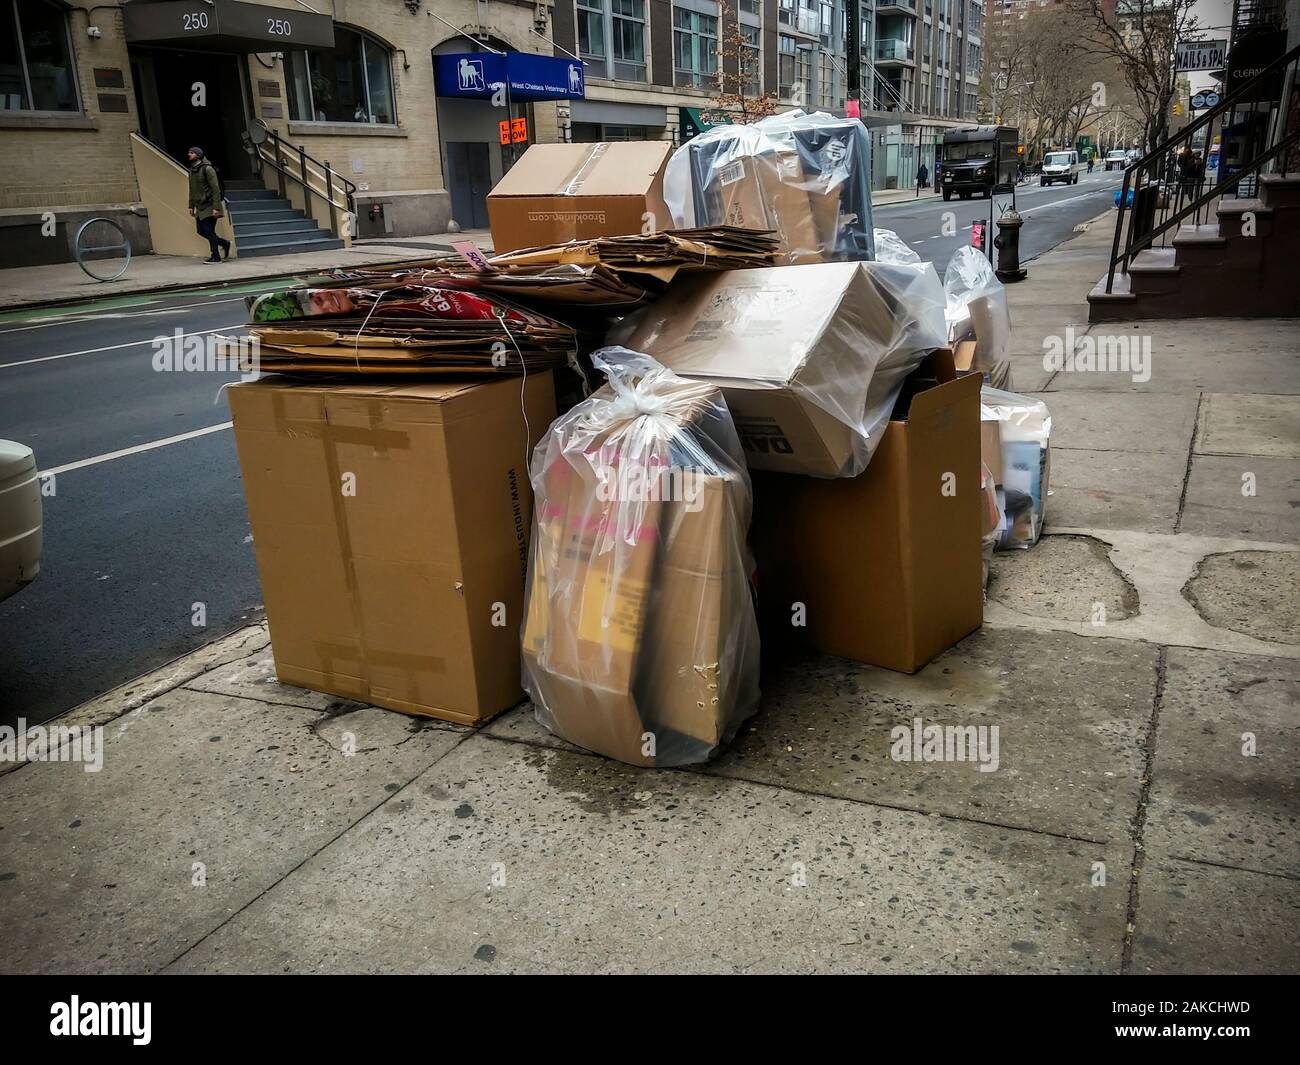 Kartons aus Christmas shopping Produkte warten auf trash Pick-up außerhalb eines Gebäudes in New York am Freitag, 27. Dezember 2019. (© Richard B. Levine) Stockfoto